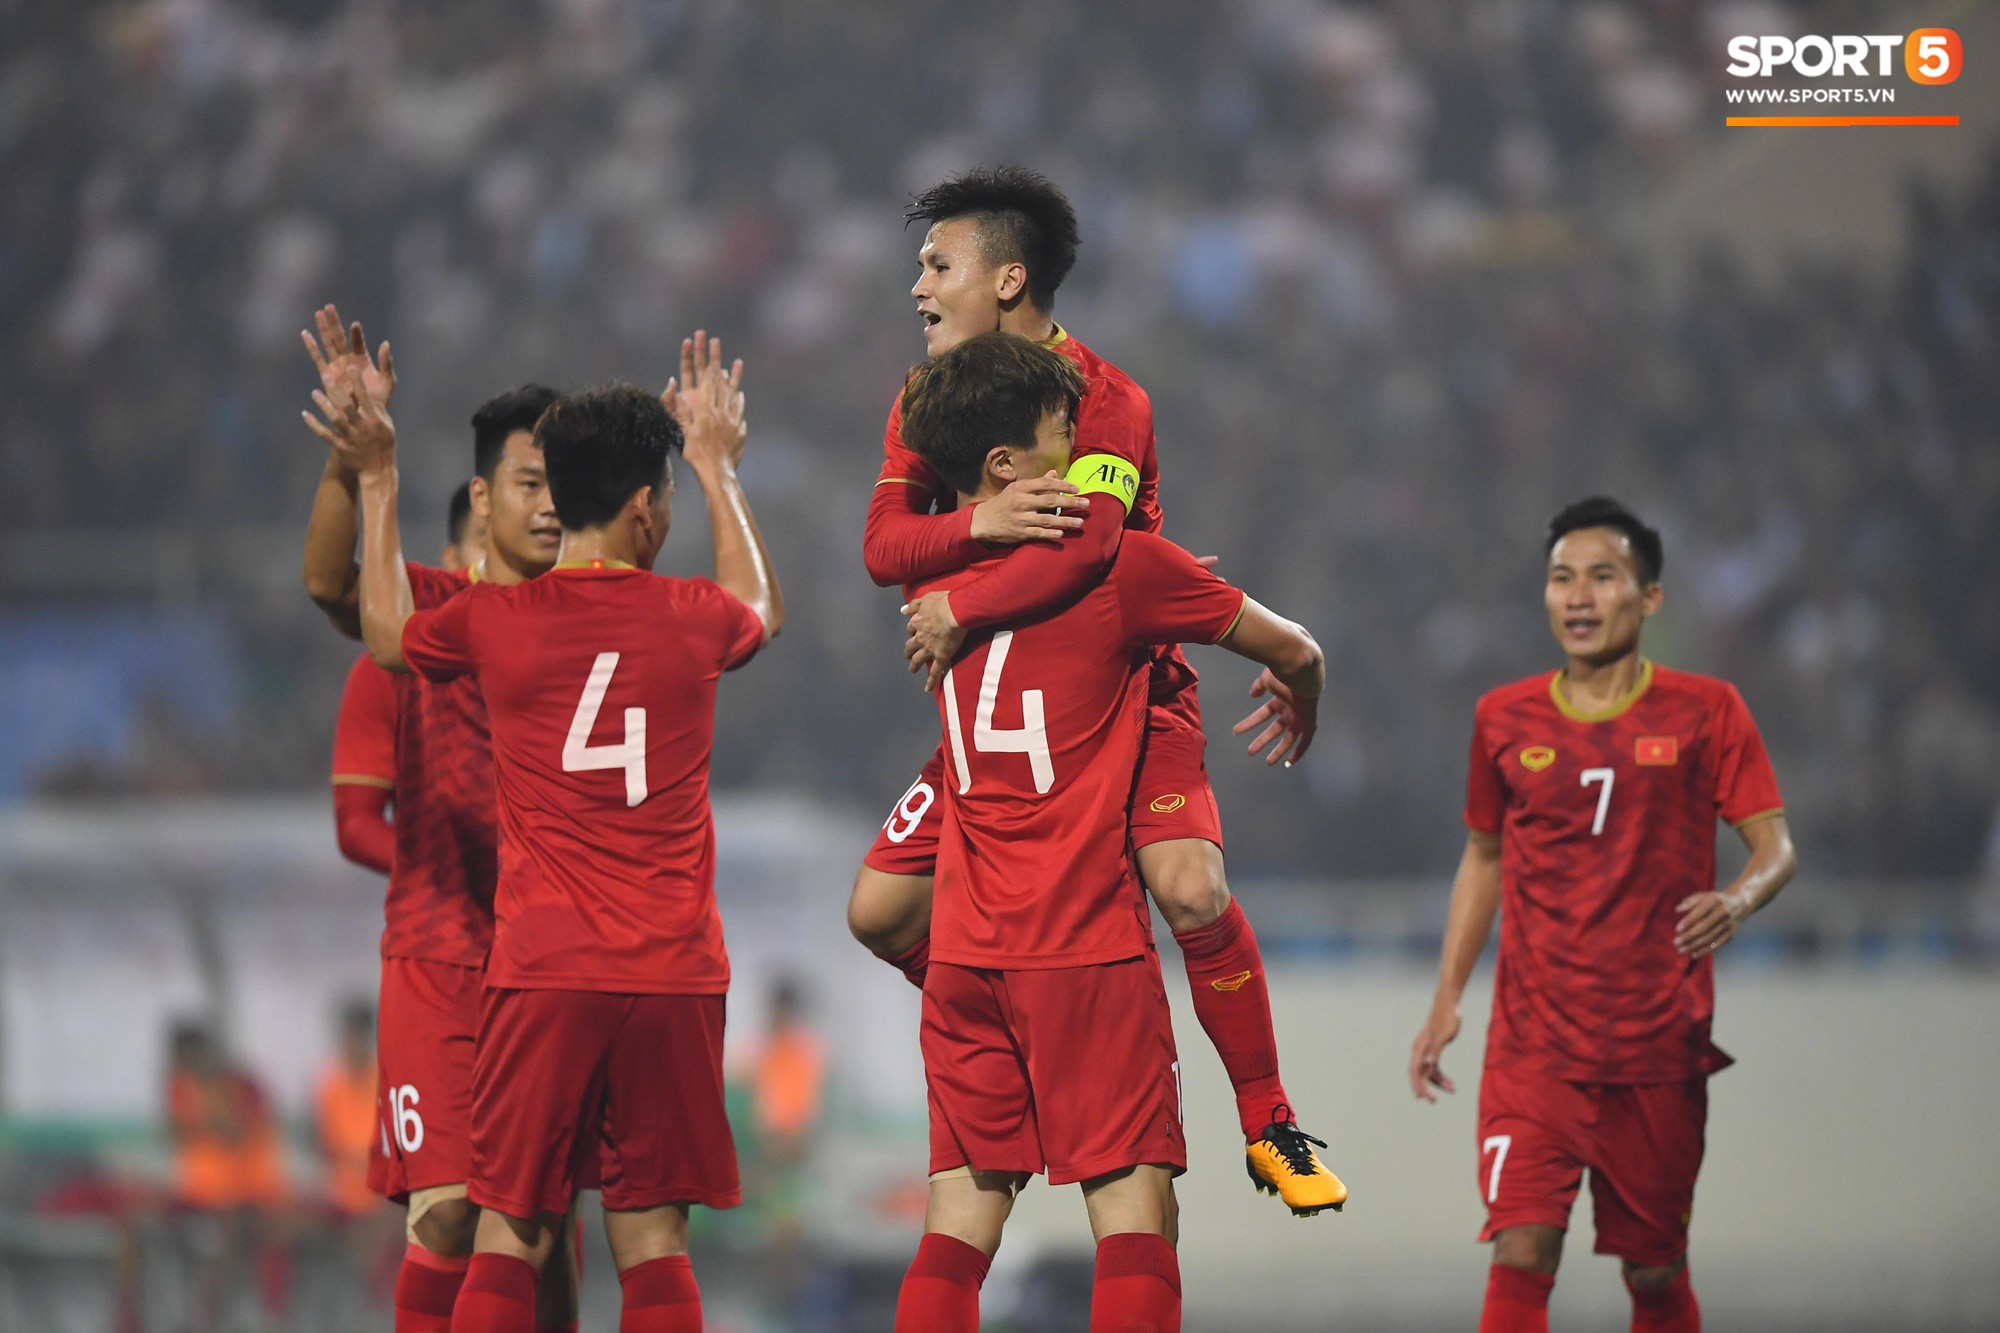 U23 Việt Nam đối diện bảng đấu siêu khó ở VCK U23 châu Á 2020-2